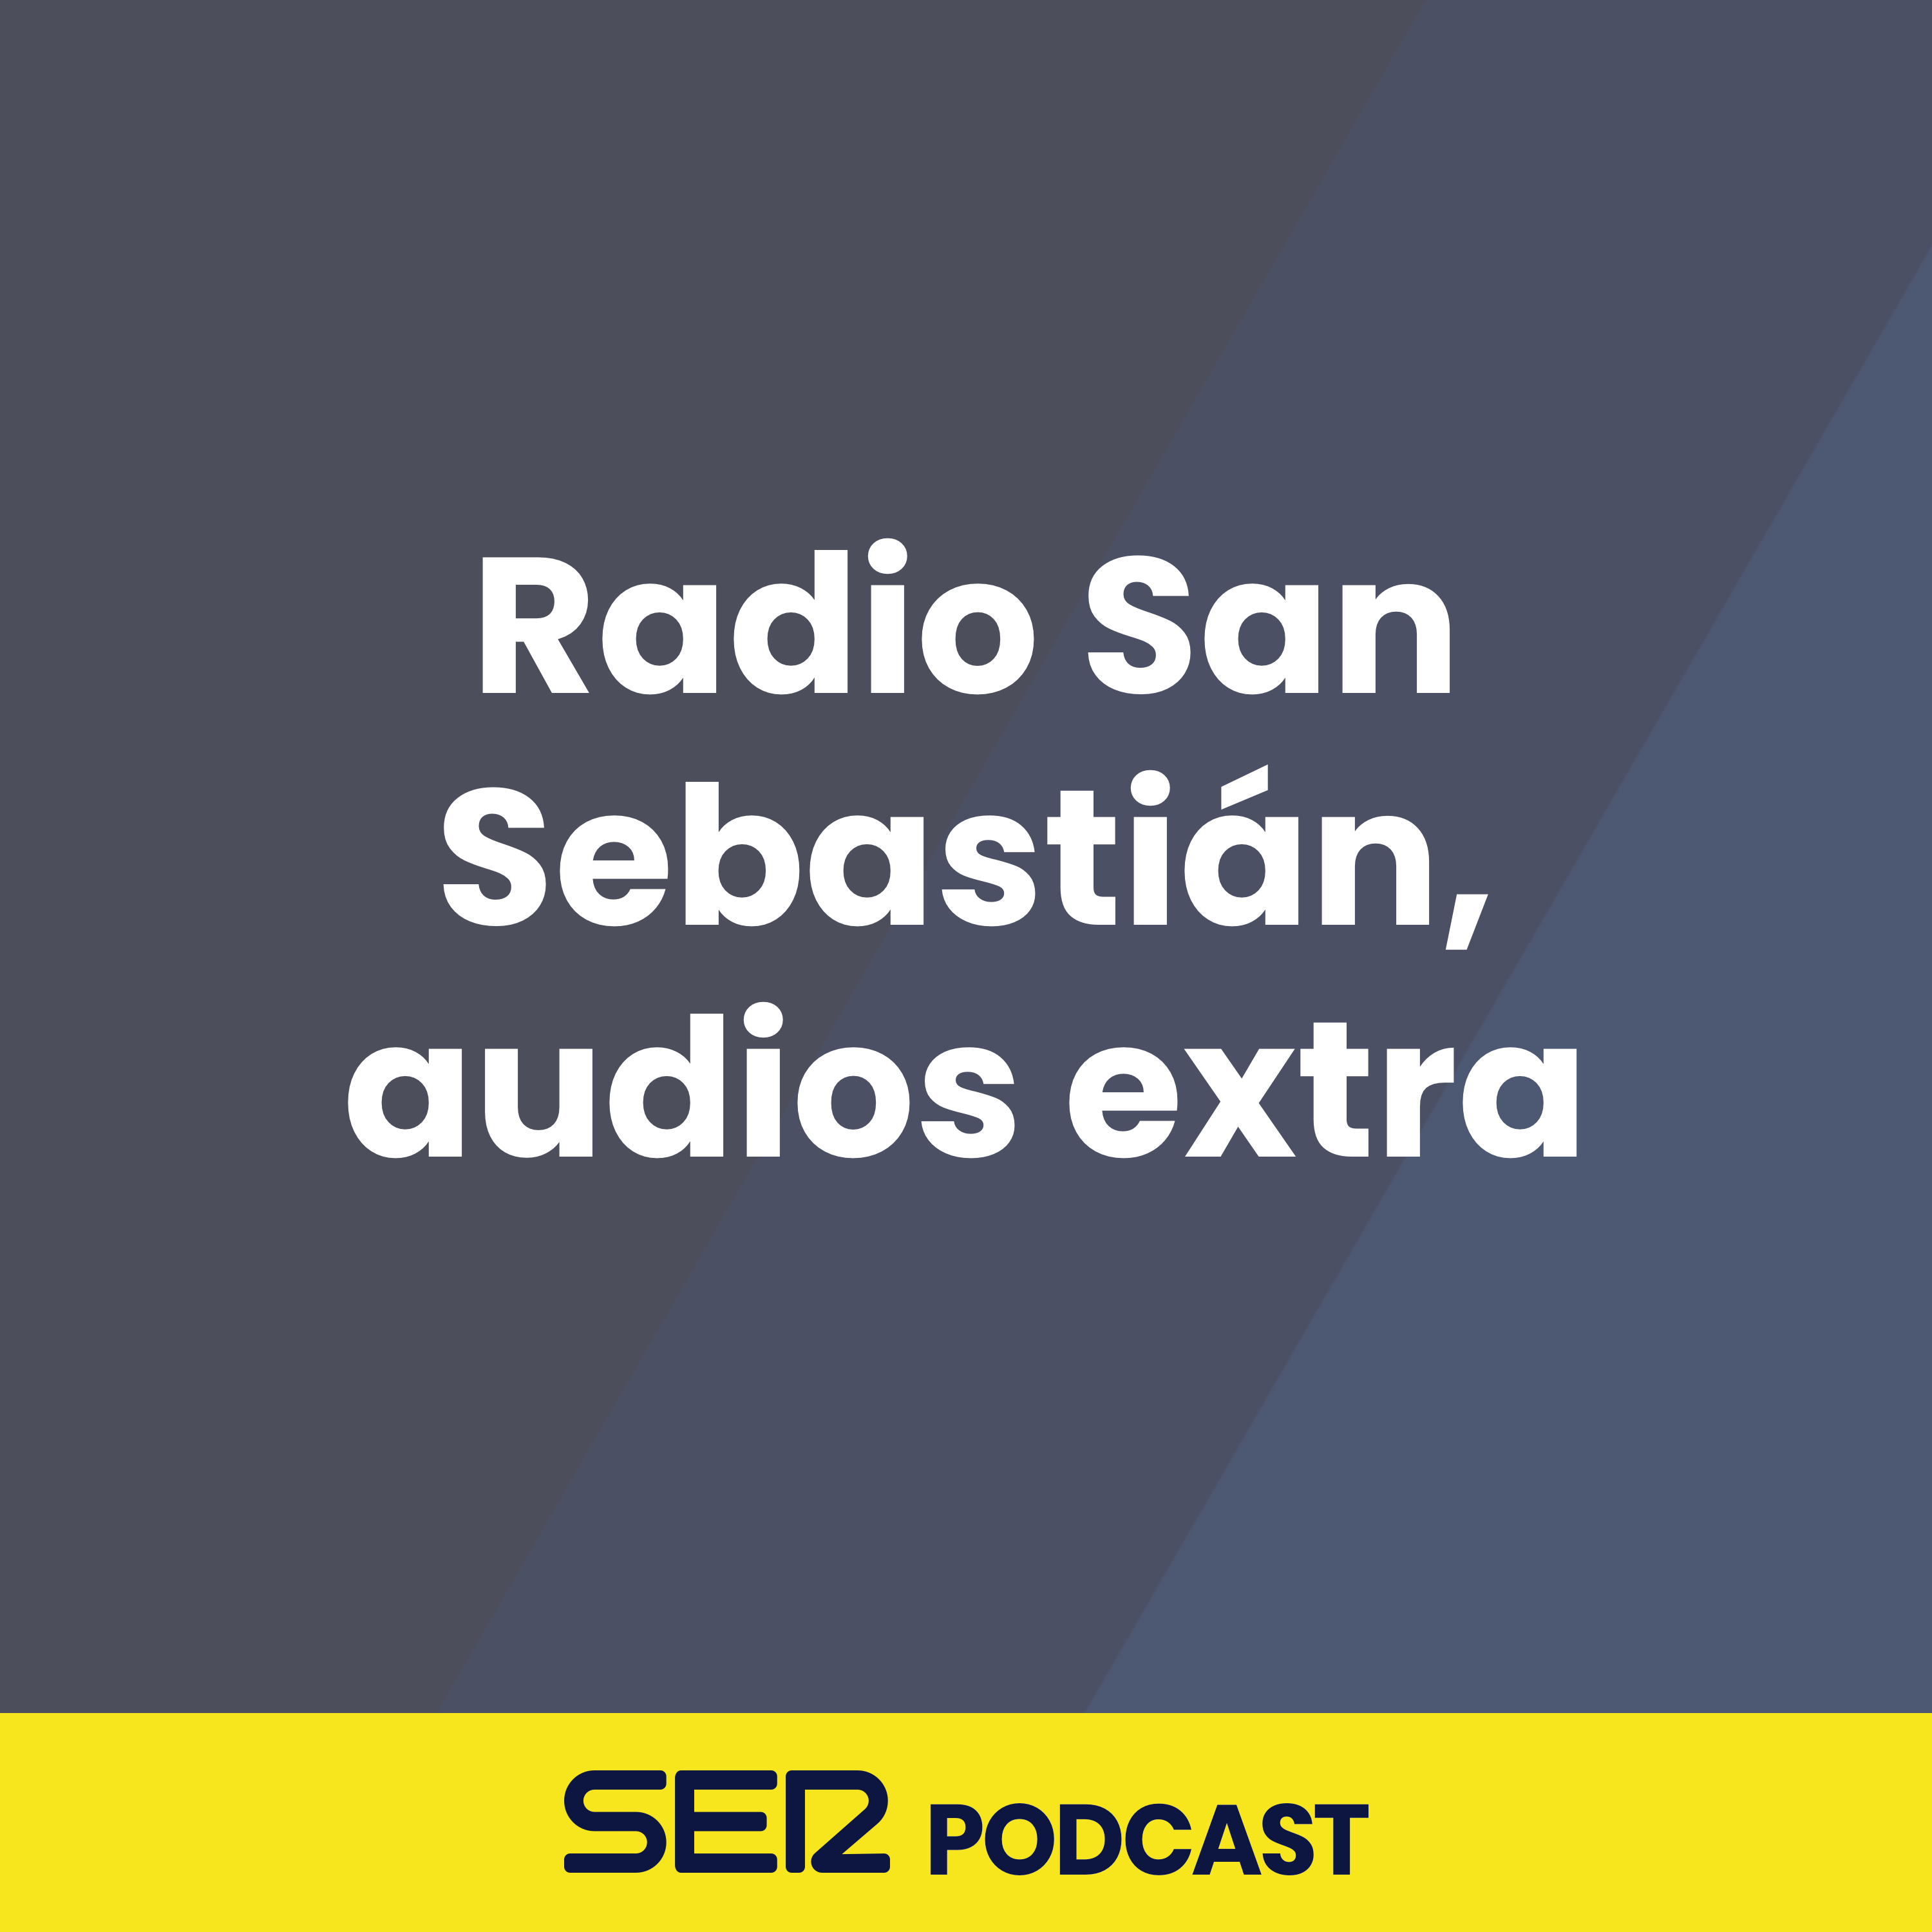 Radio San Sebastián, audios extra